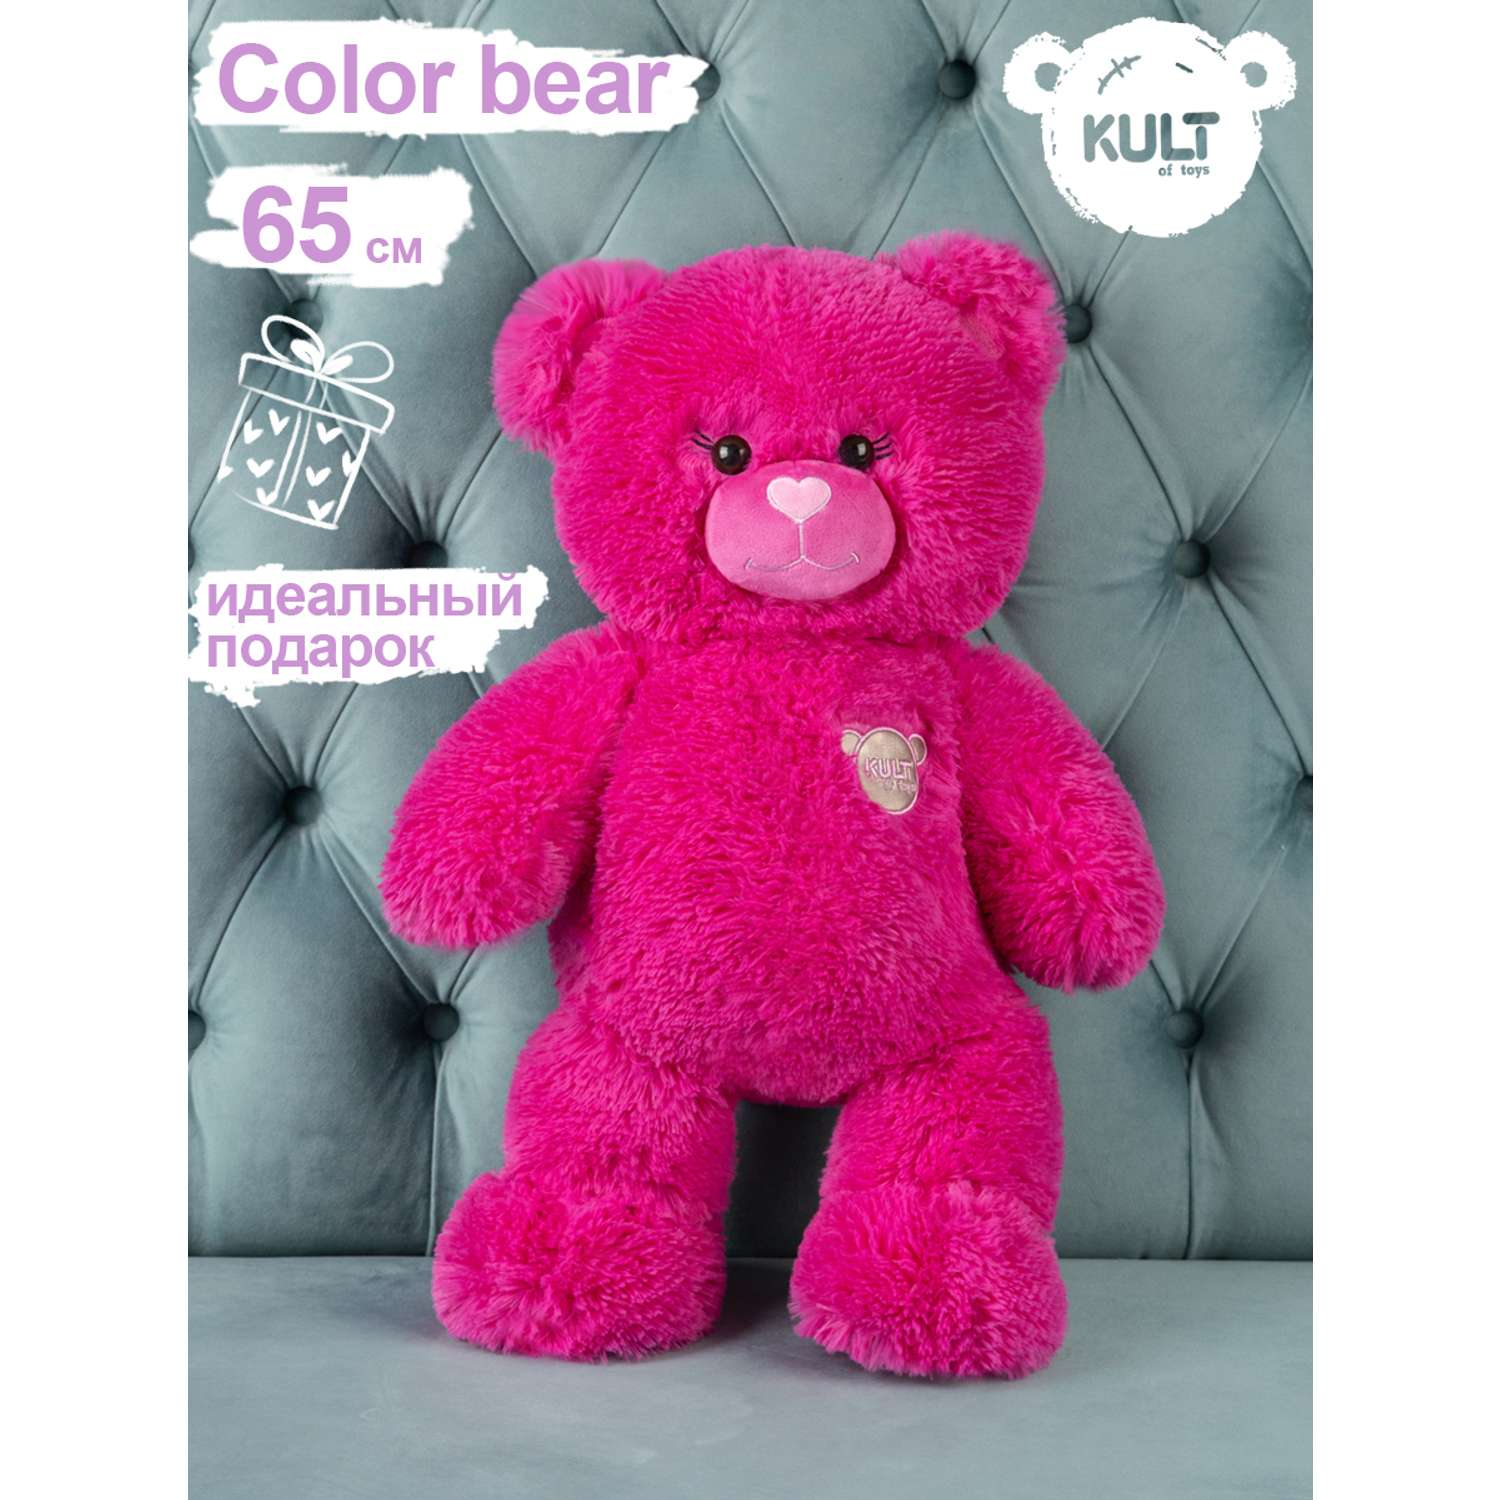 Мягкая игрушка KULT of toys Плюшевый медведь Color 65 см цвет фуксия - фото 2